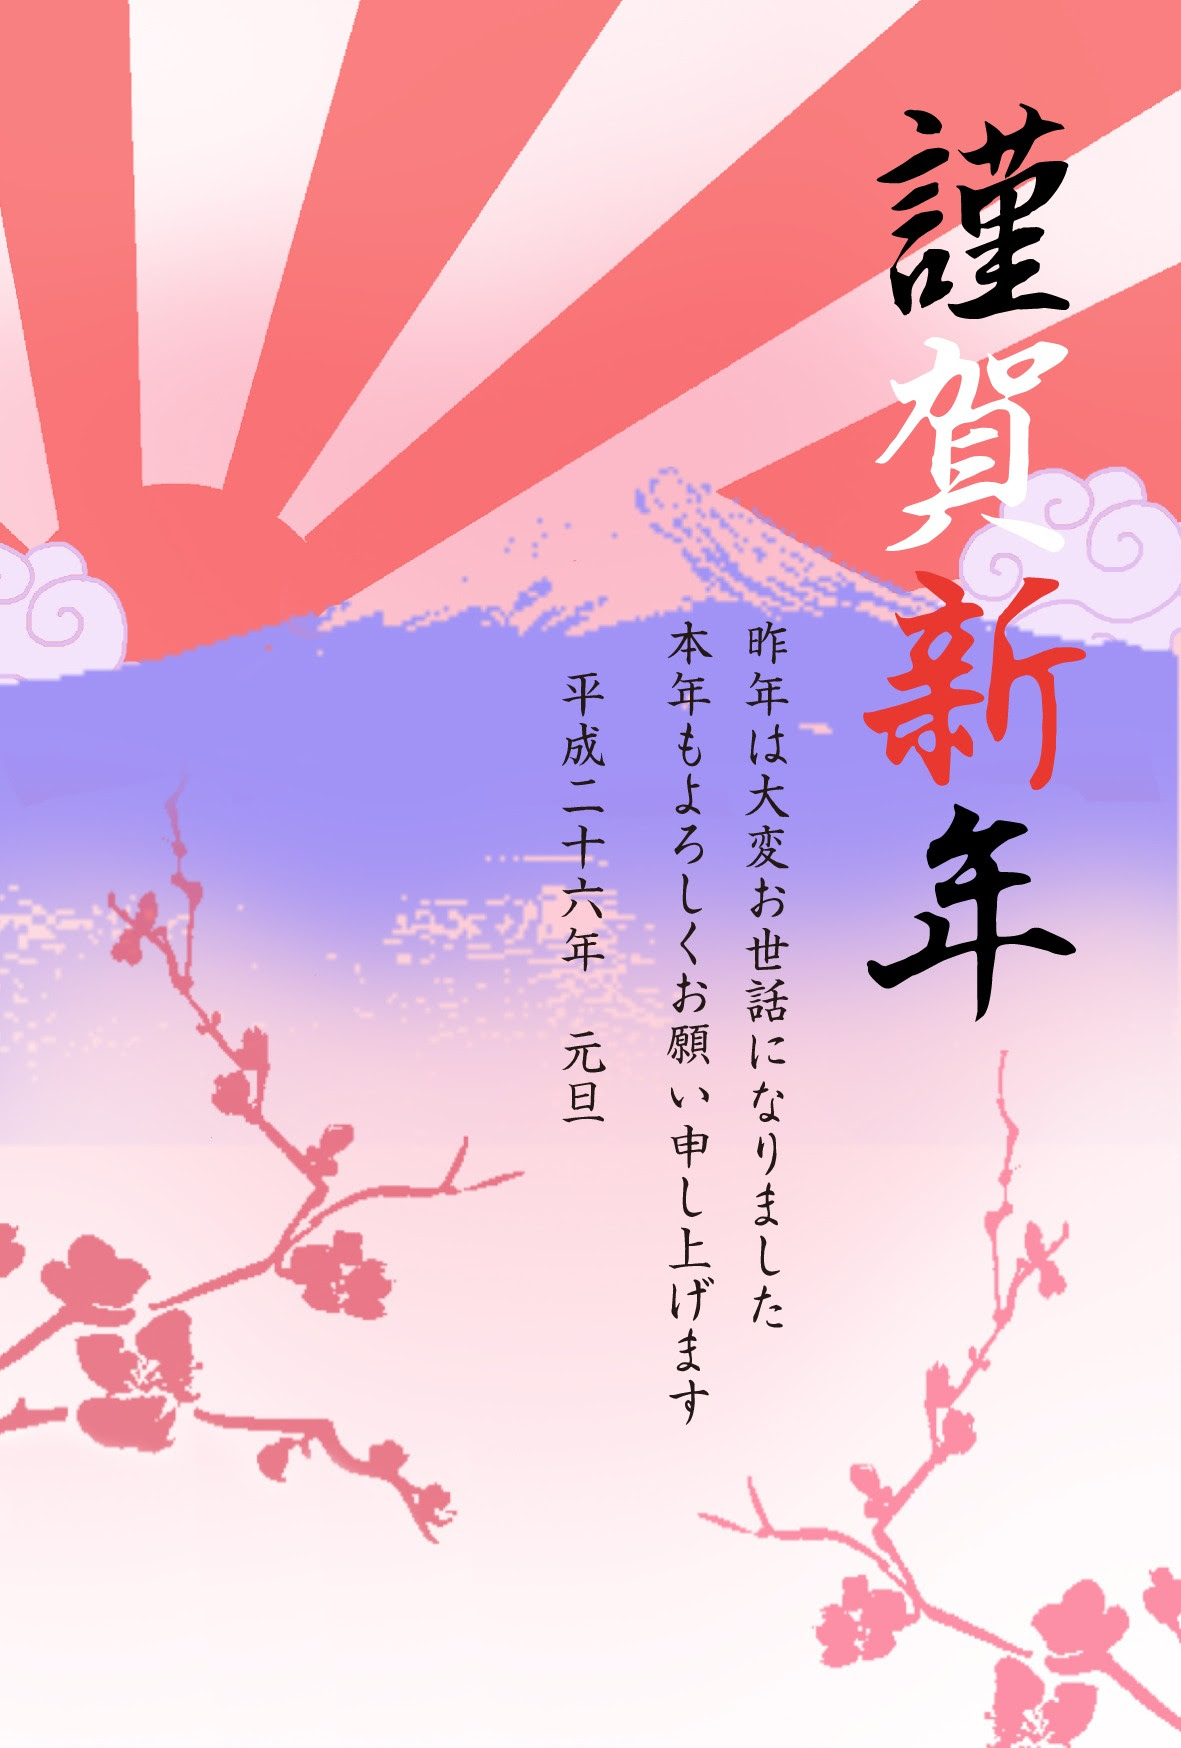 年賀状 Net 無料素材富士山と日の出